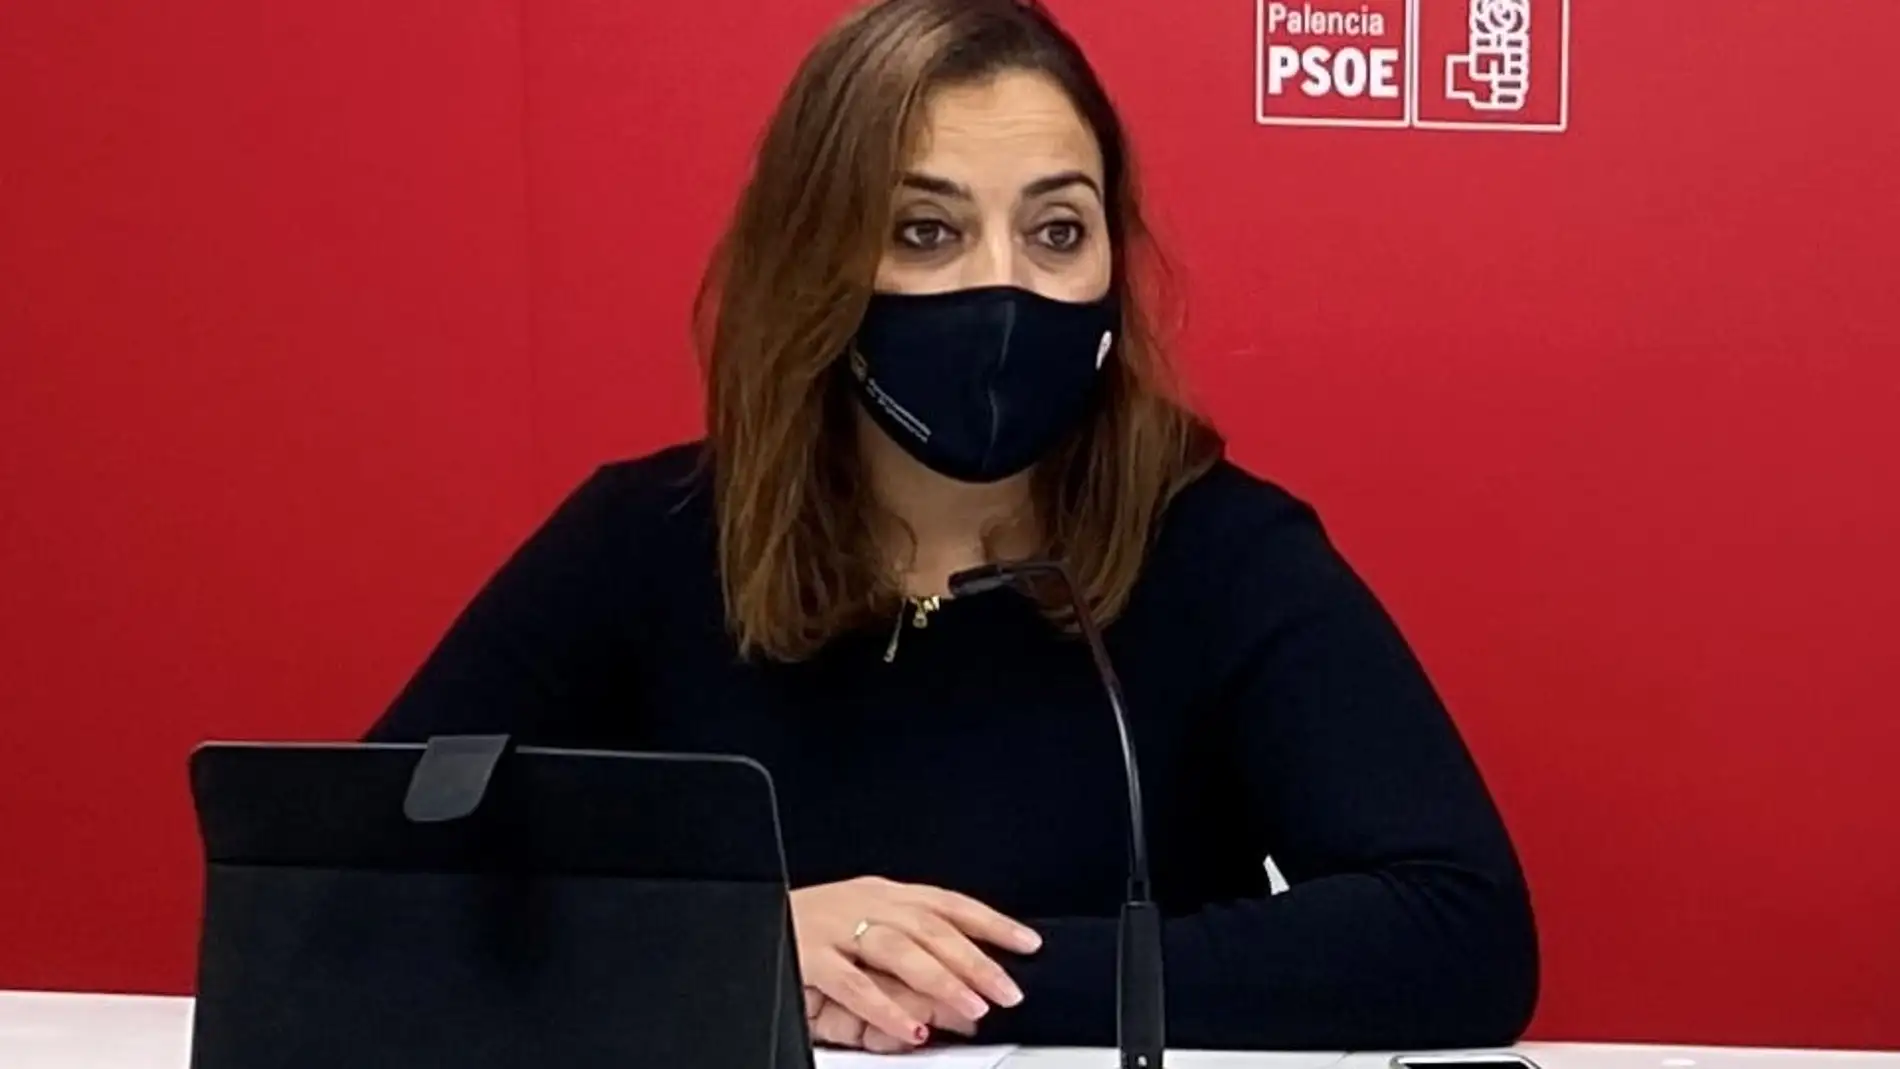 Andrés: " Solicitamos la dimisión del alcaldce de Palencia ya que la situación es insostenible"